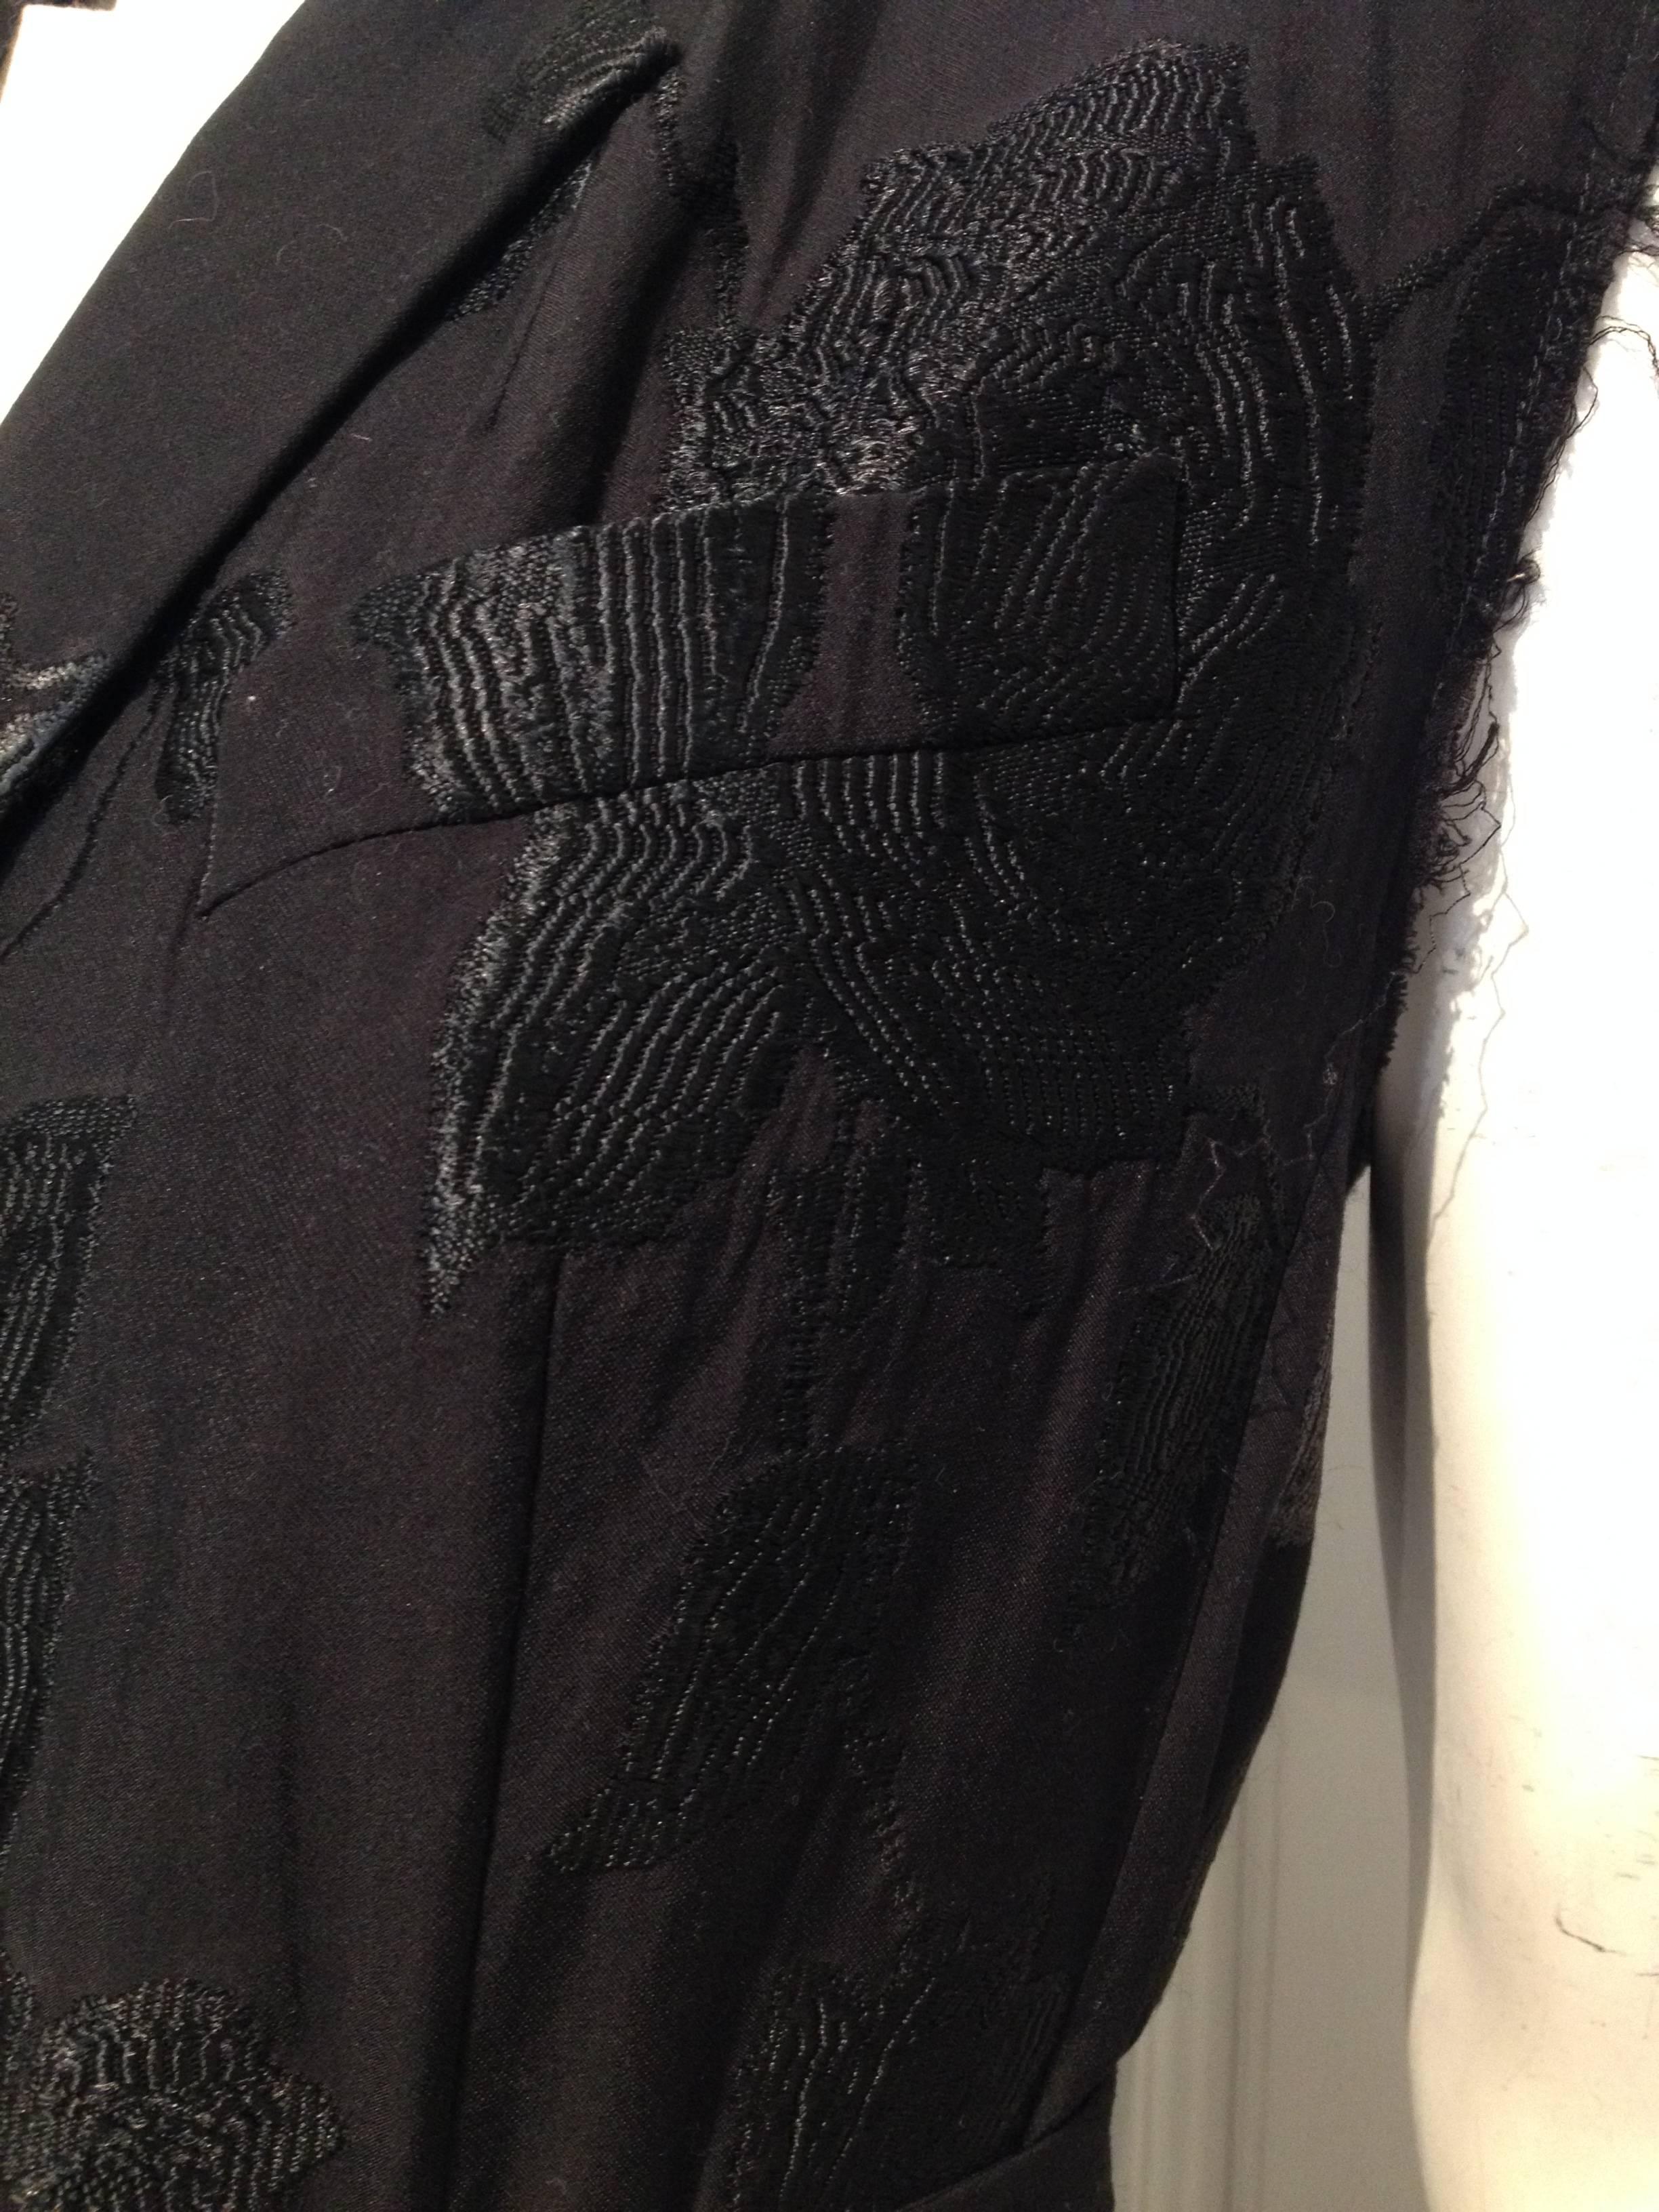 Dries van Noten Black Brocade Vest Size 40 (10) 2